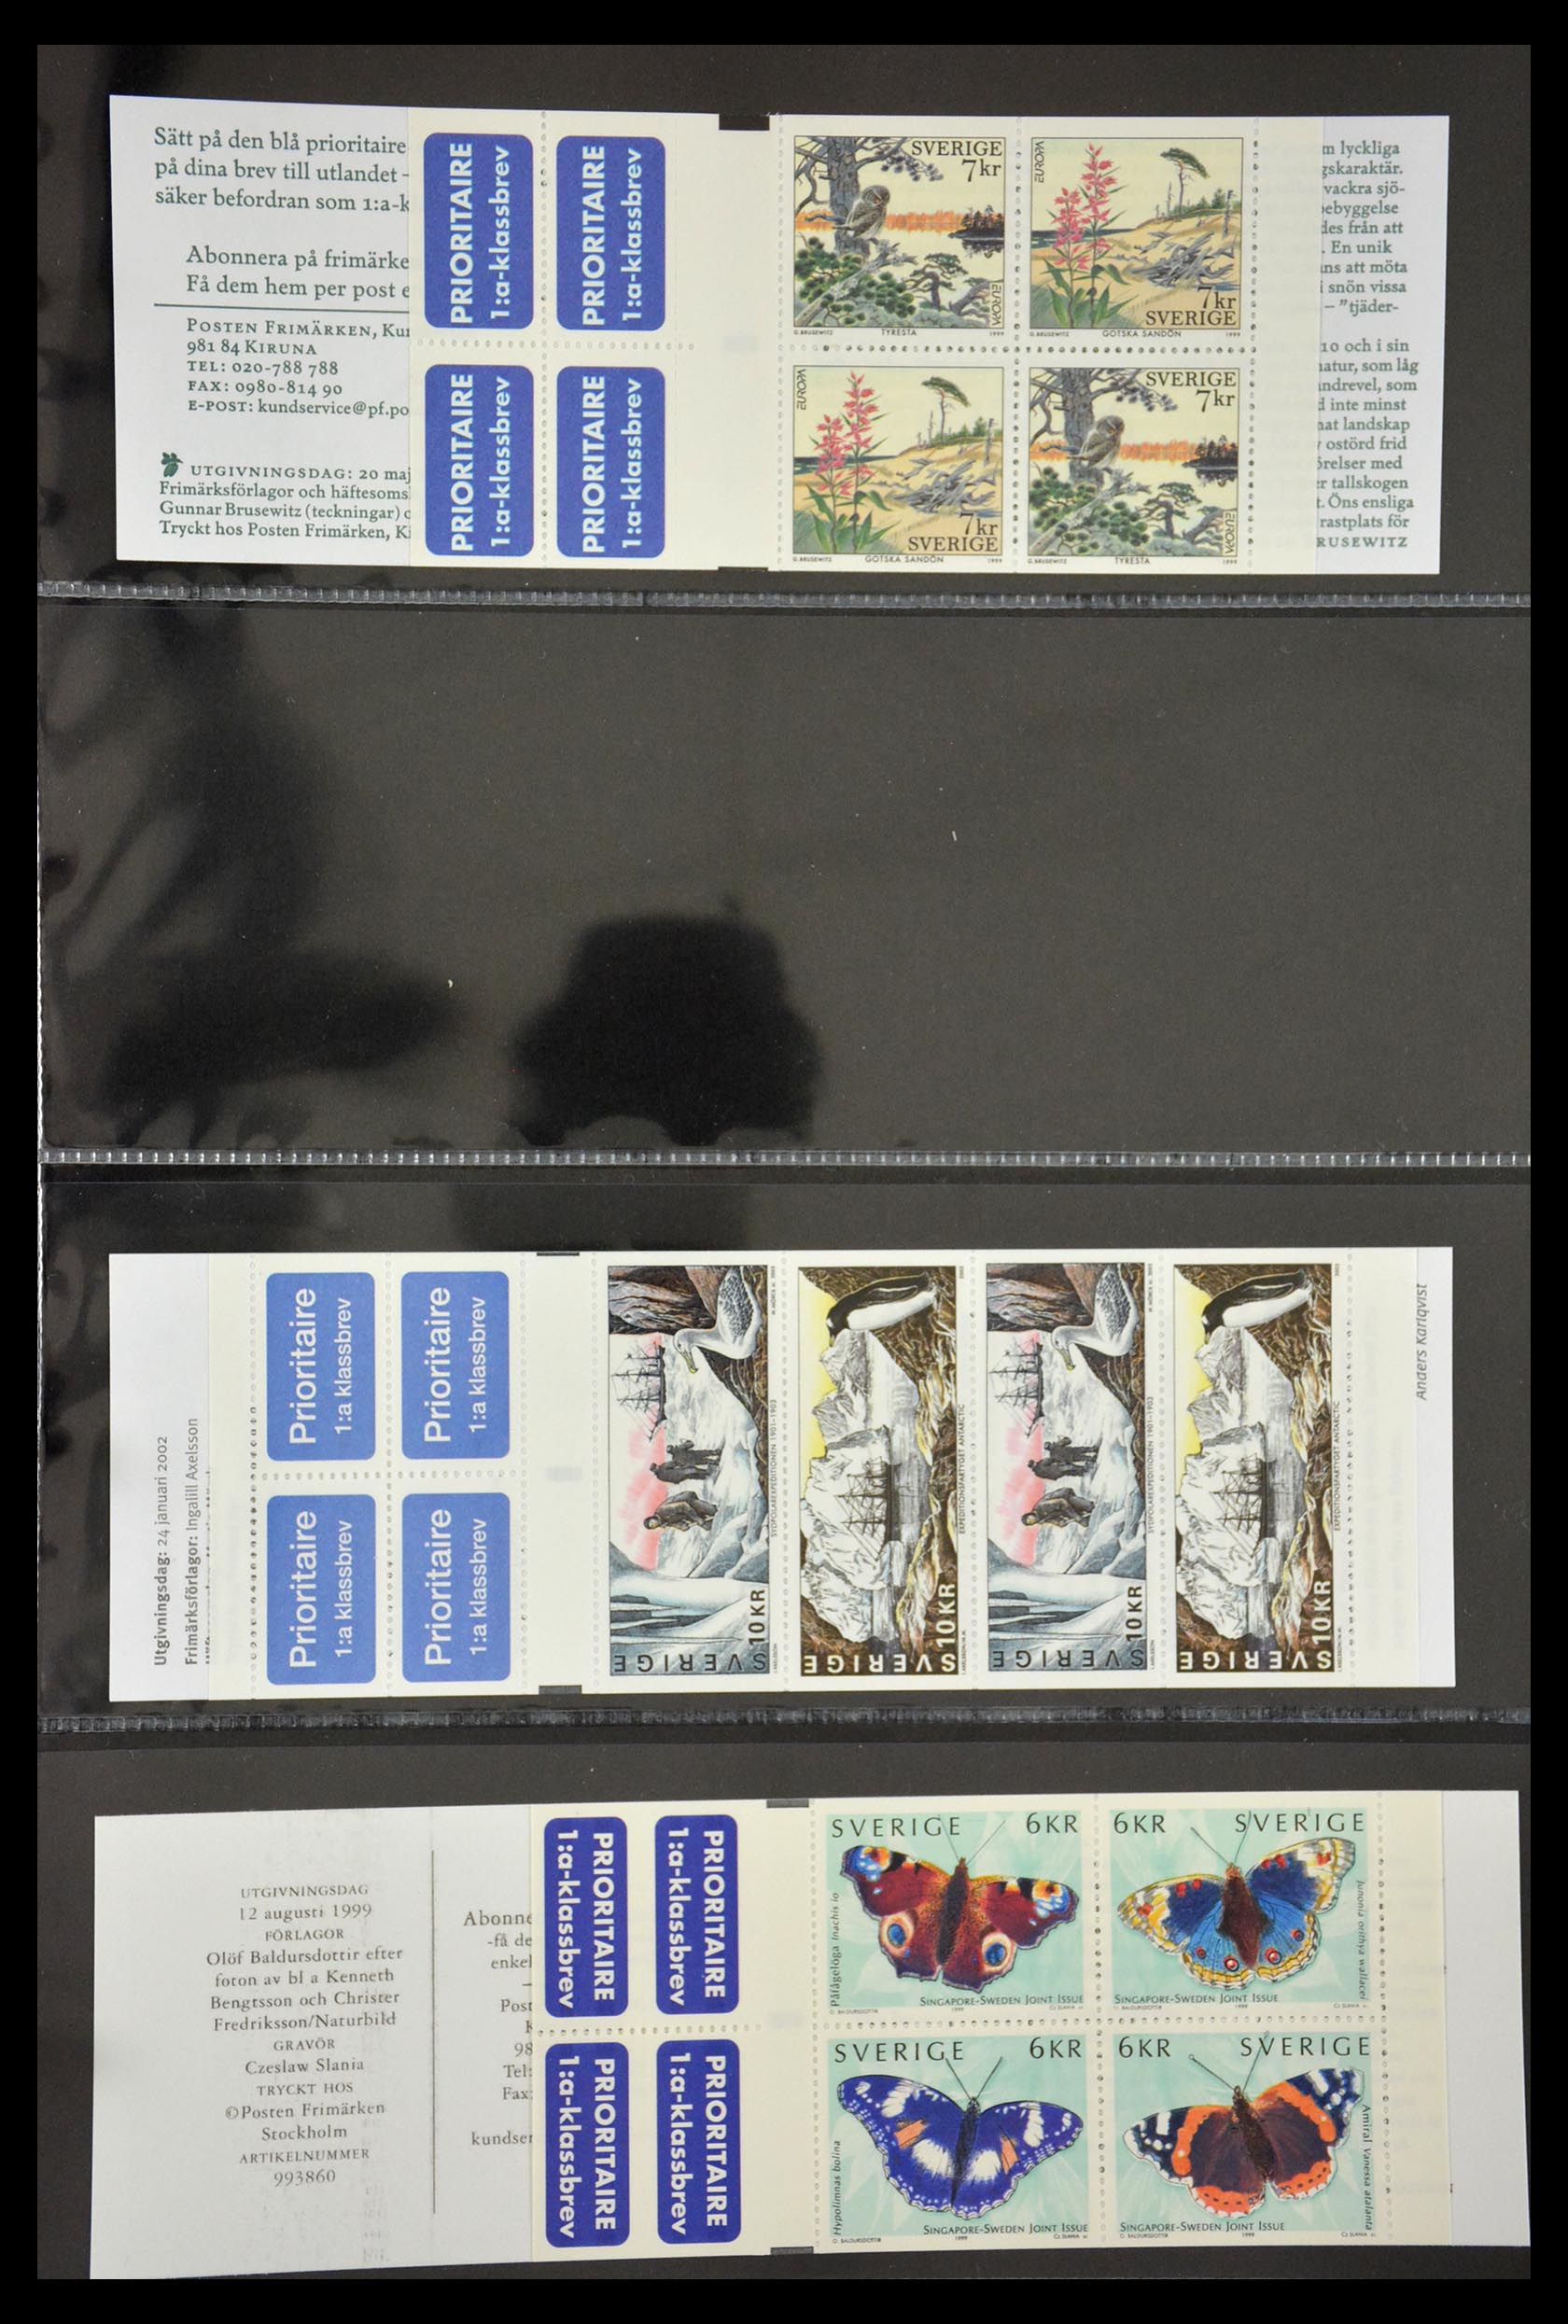 29368 124 - 29368 Sweden stamp booklets 1942-1996.